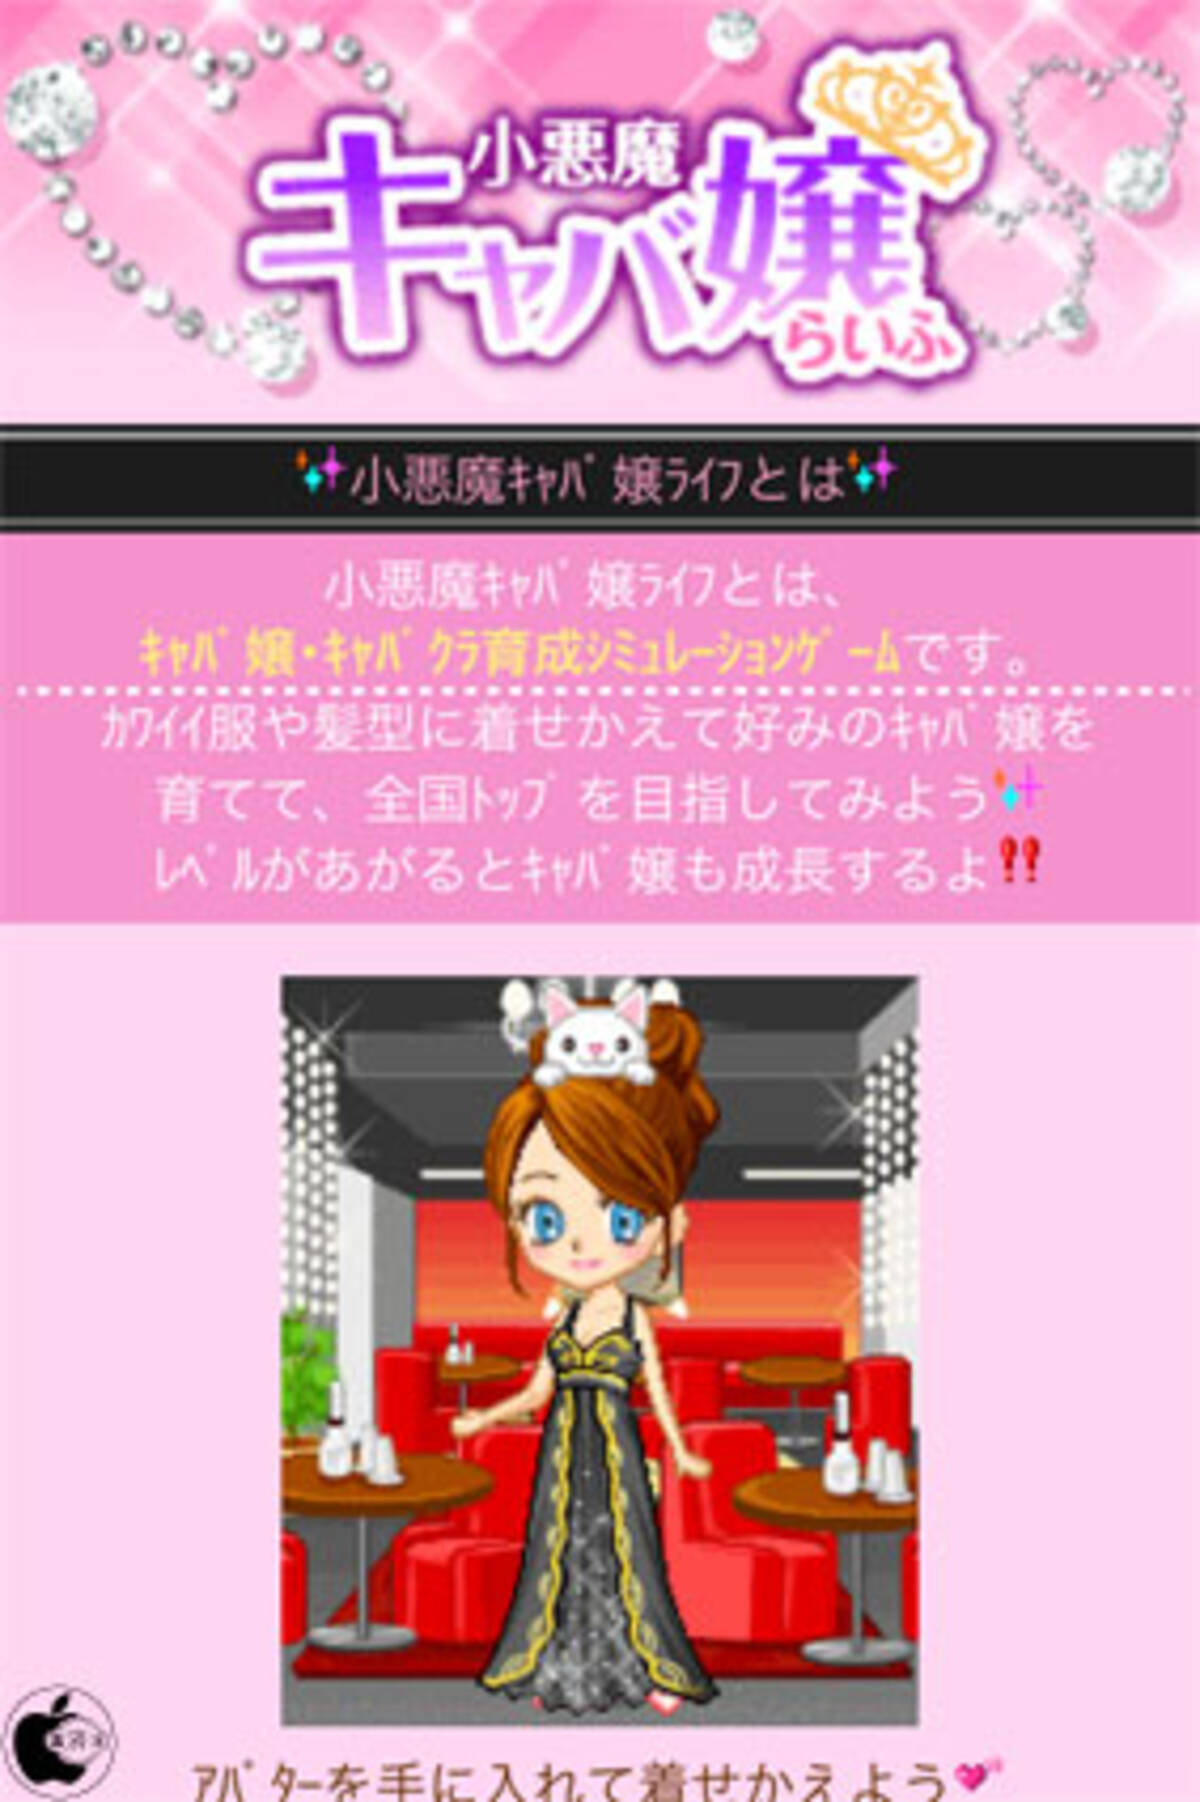 ラビオンソーシャル ソーシャルキャバ嬢育成ゲームアプリ 小悪魔キャバ嬢らいふ をリリース 11年6月13日 エキサイトニュース